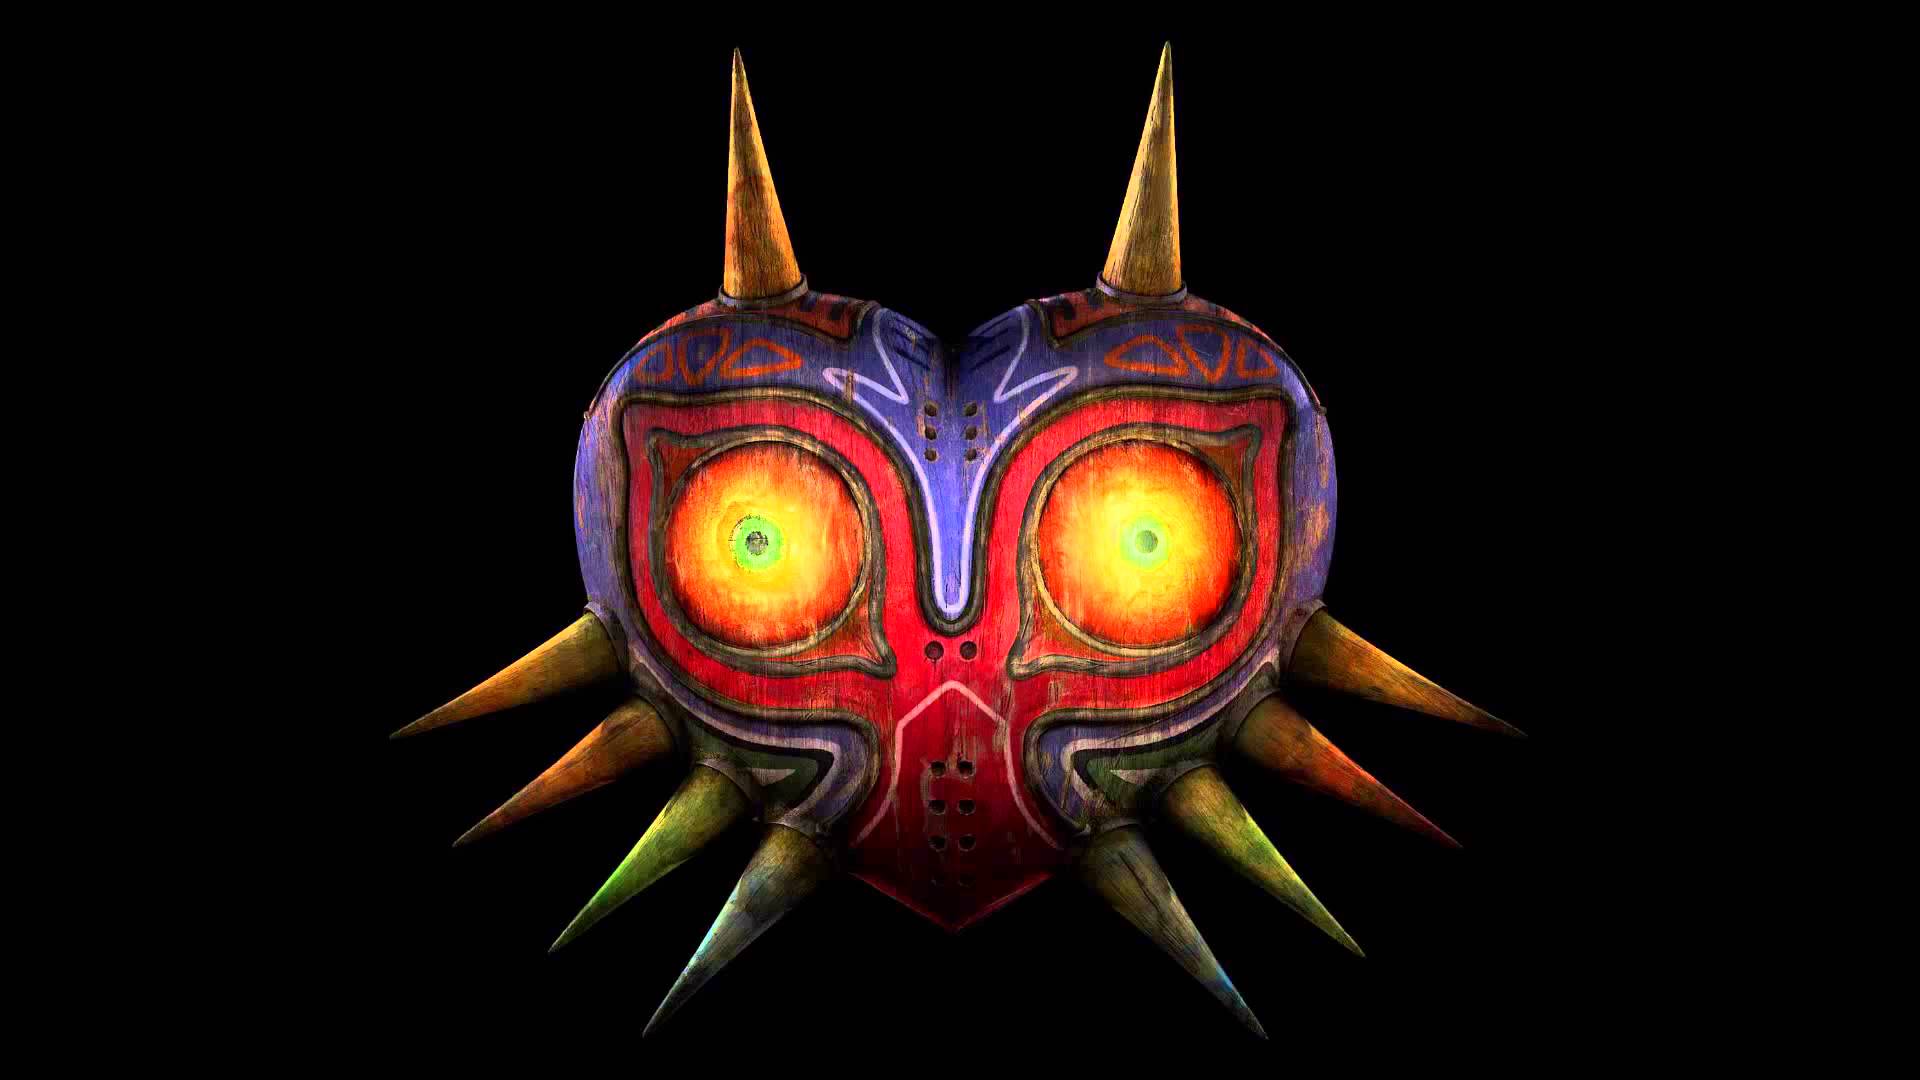 The Legend Of Zelda: Majora's Mask HD Wallpaper | Background Image